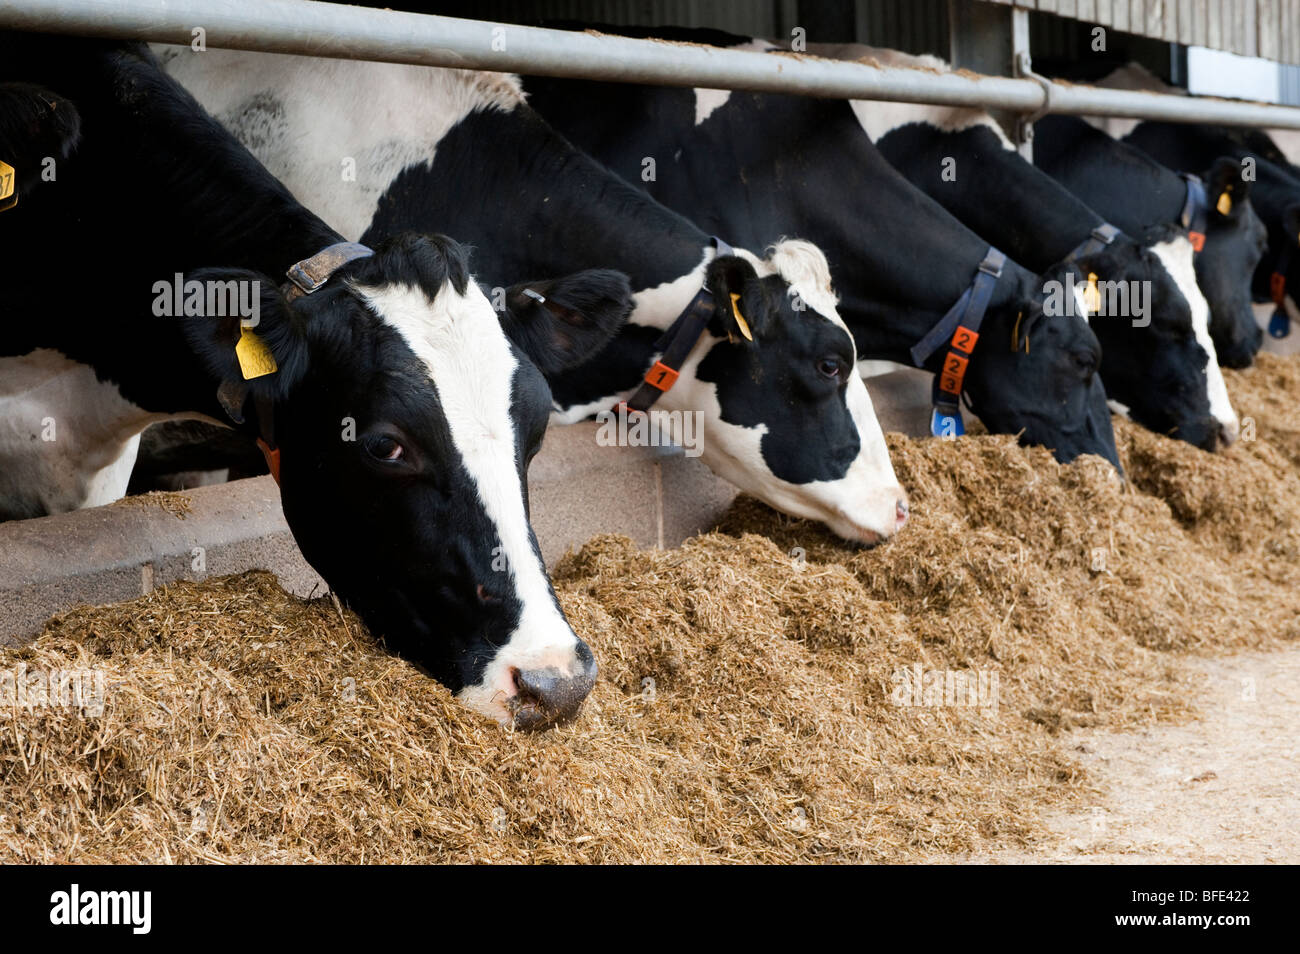 Les bovins laitiers manger une ration de mélange maison derrière la barrière d'alimentation. Banque D'Images